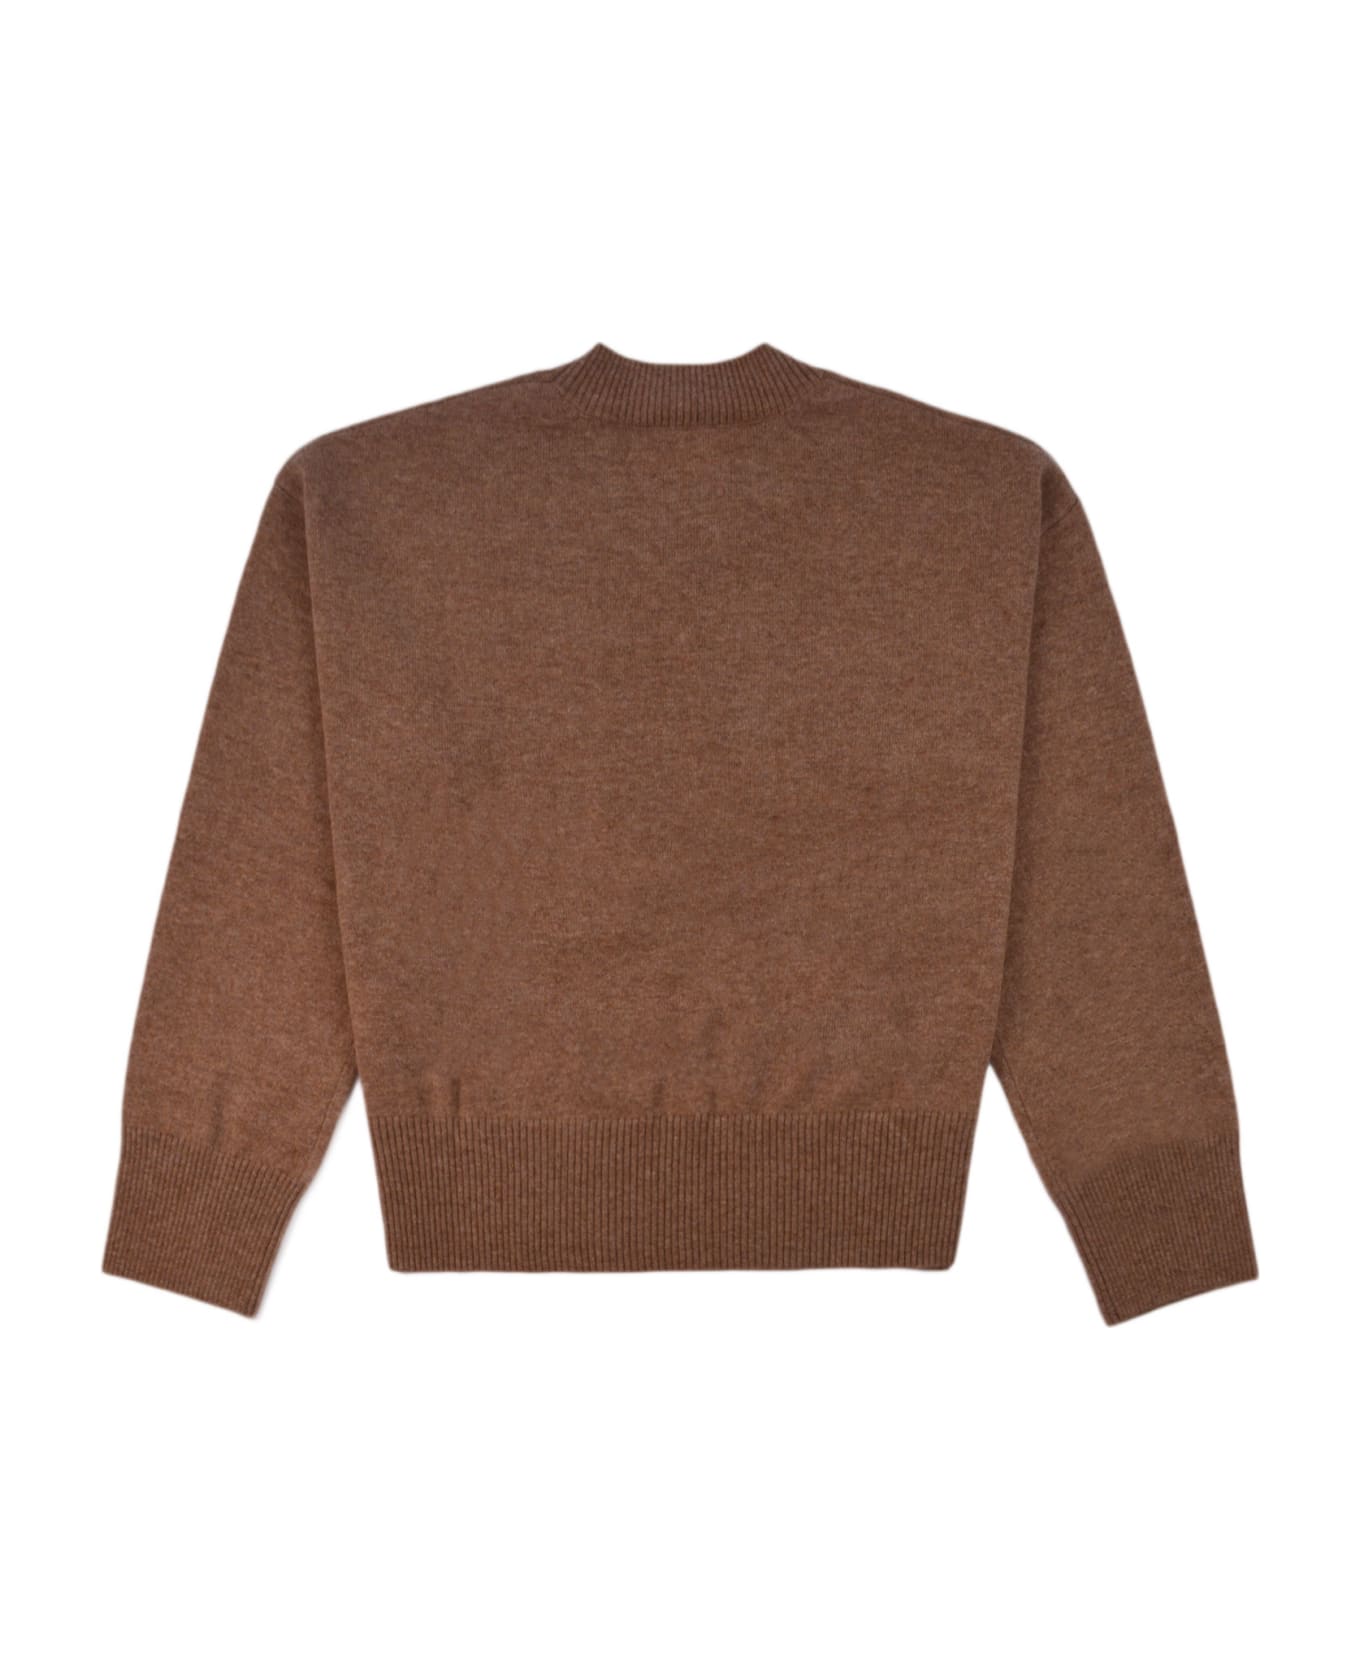 Parosh Sweater - BEIGE ニットウェア